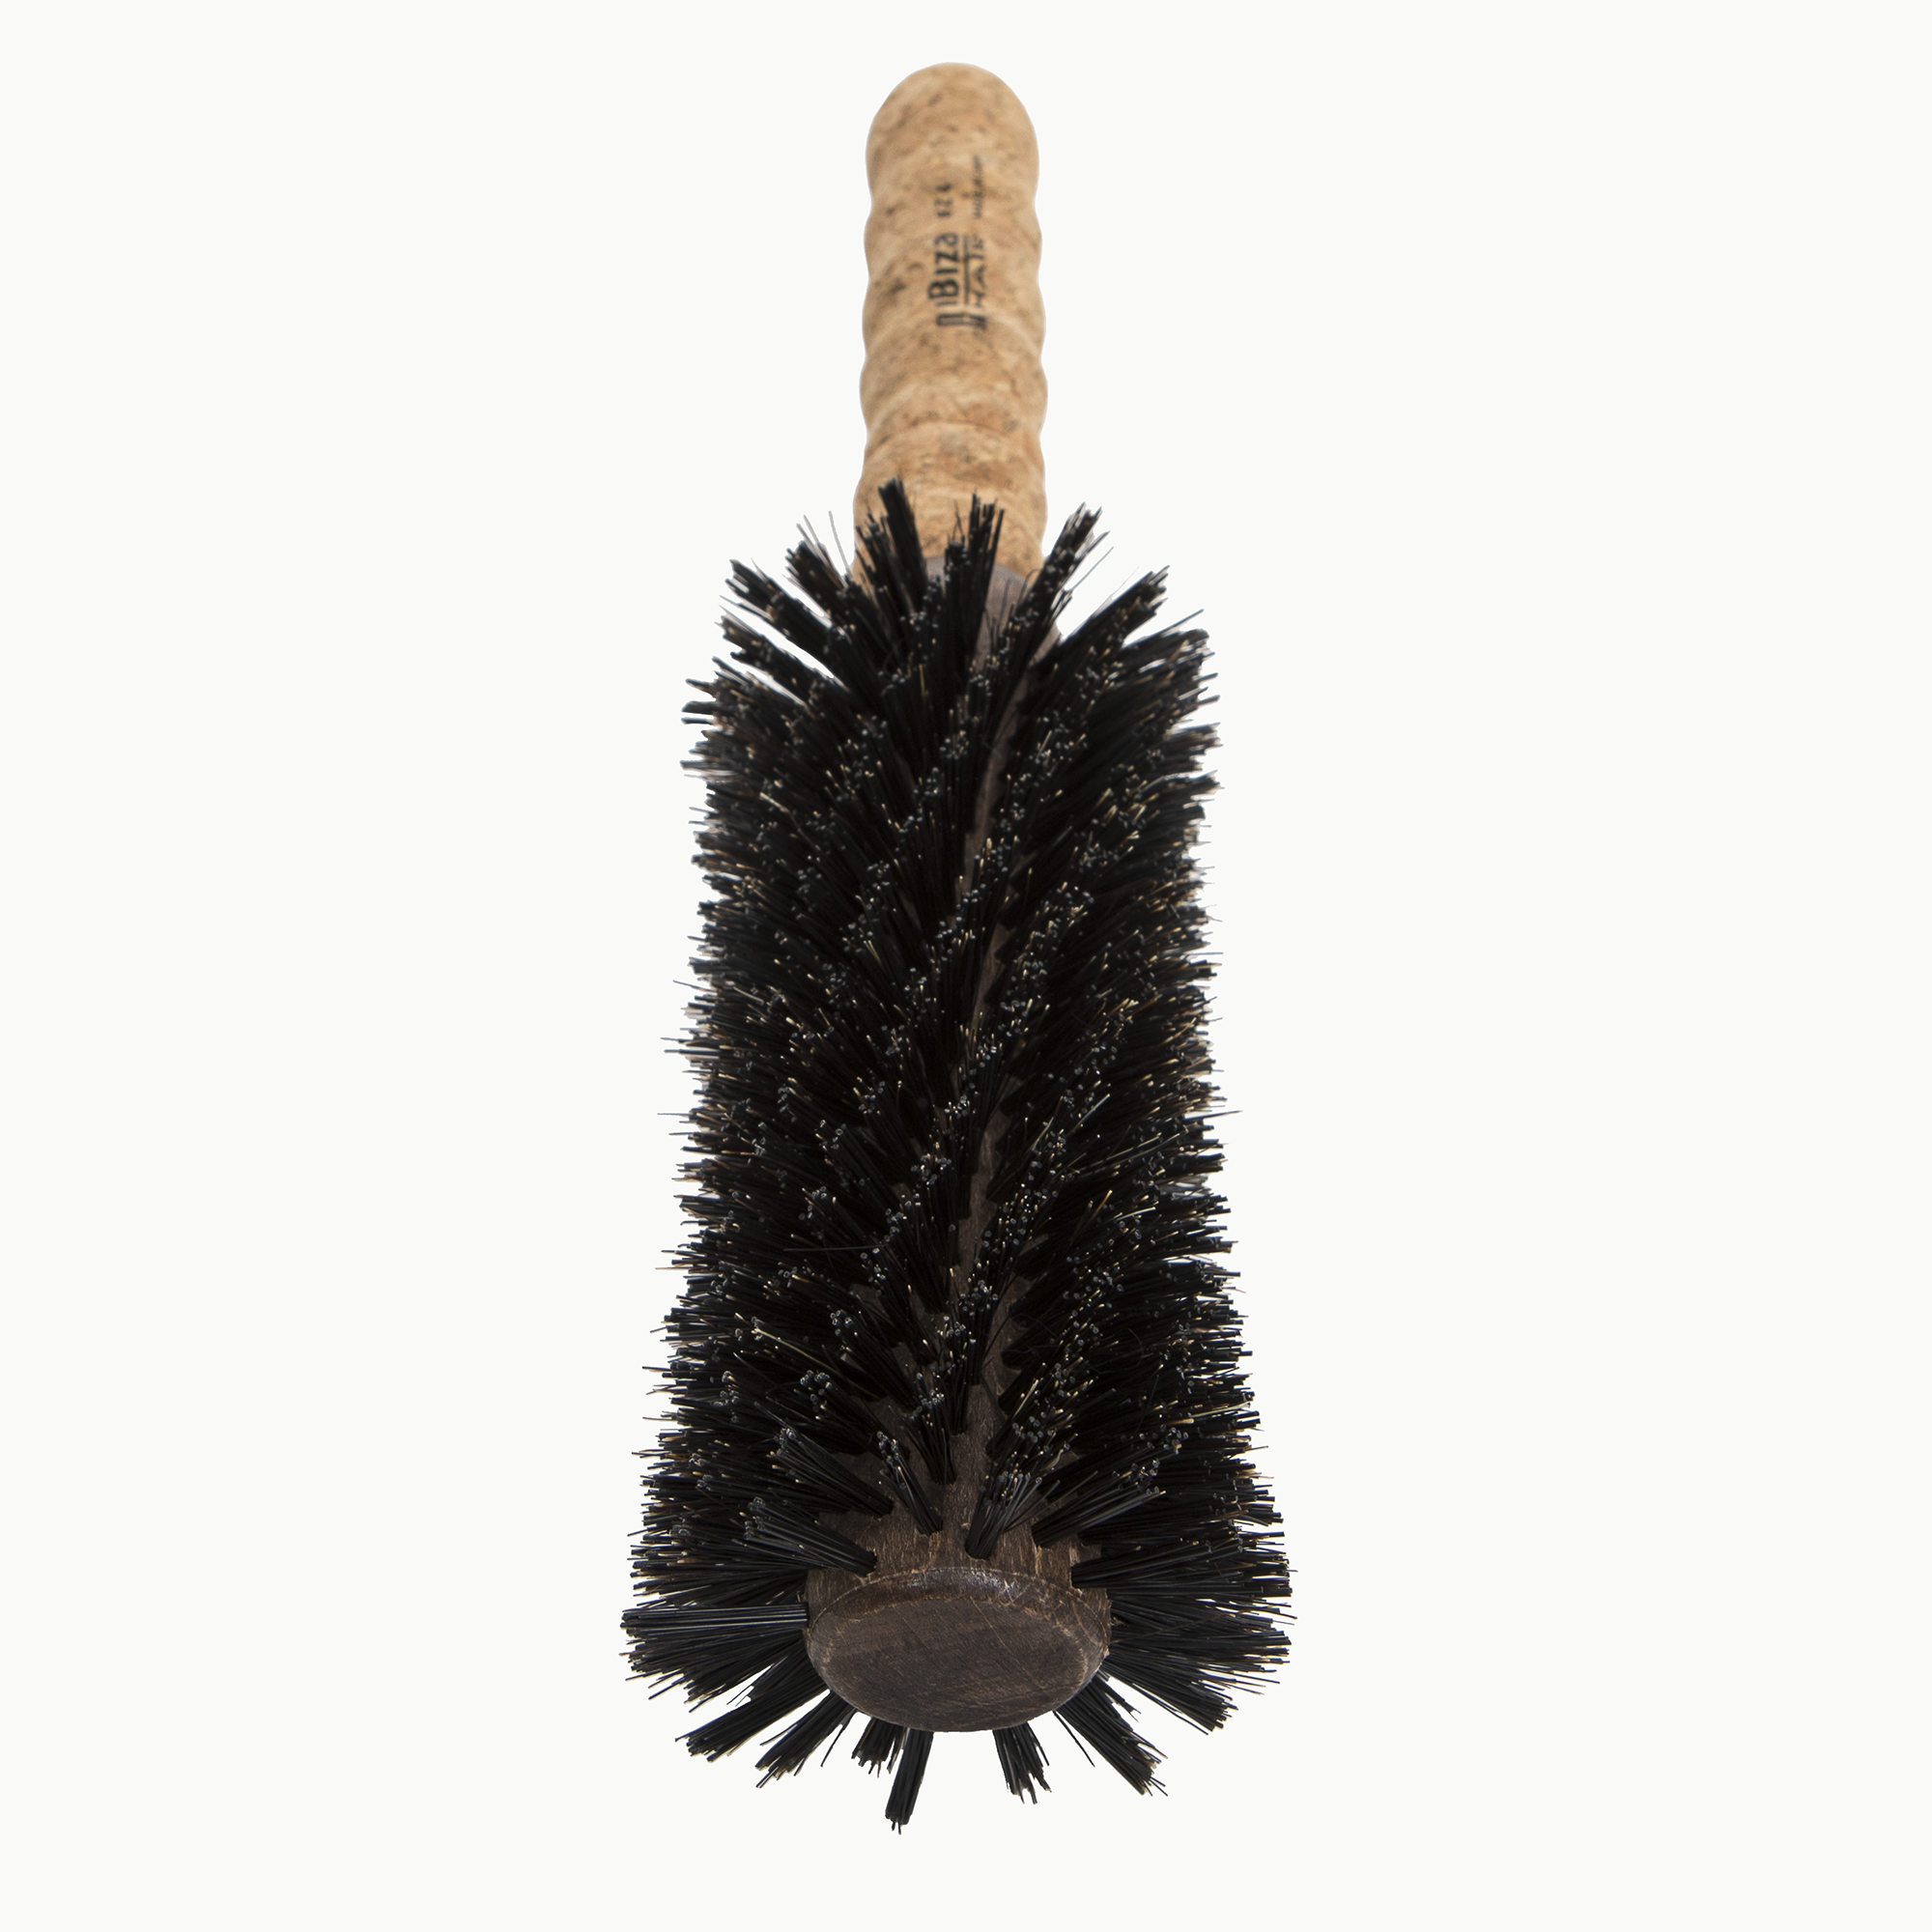 Philip B Large Round Hair Brush - 65mm